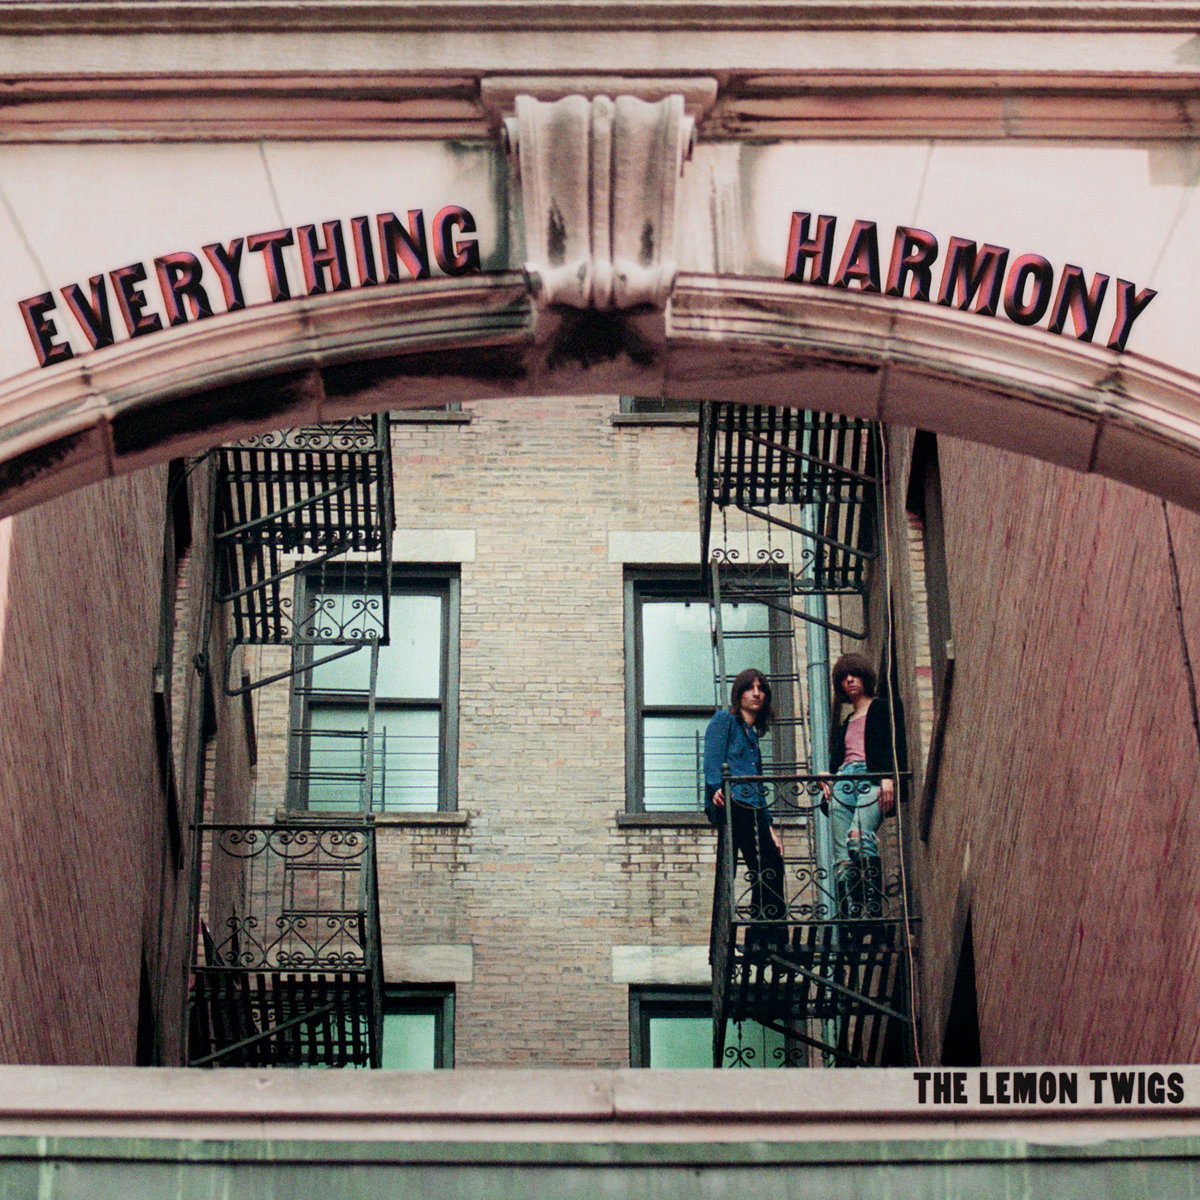 The Lemon Twigs – Everyday Harmony